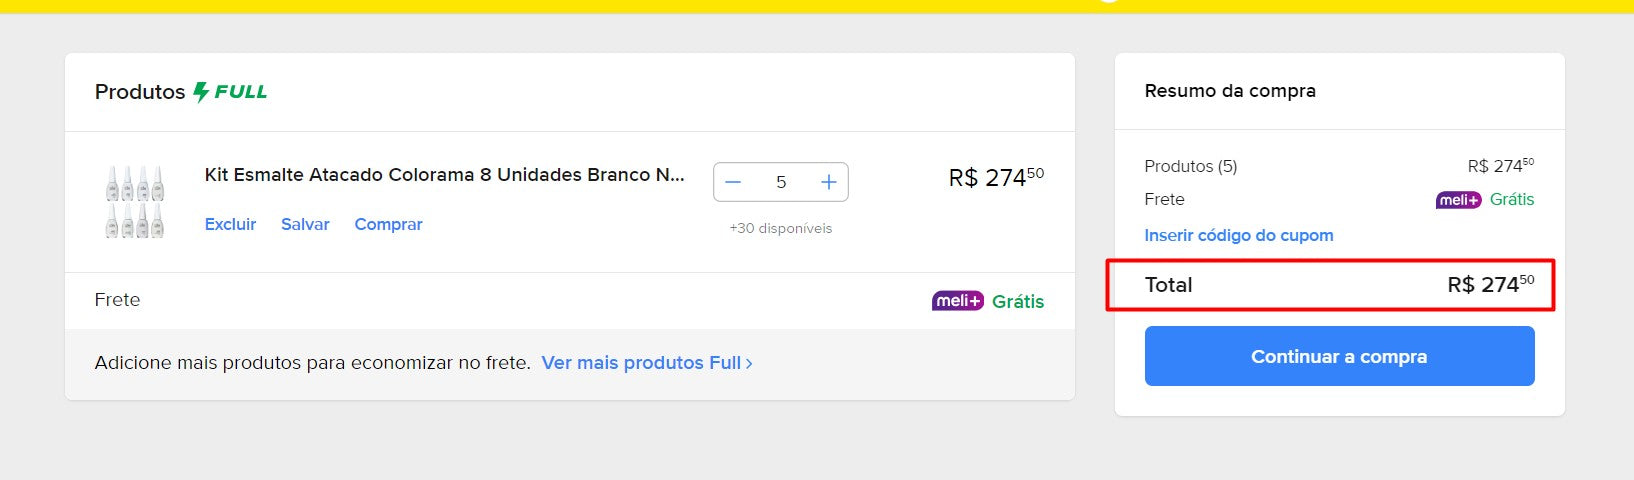 パーソナルショッパー | ブラジルから購入 - マニキュア用キット - 9 キット - DDP